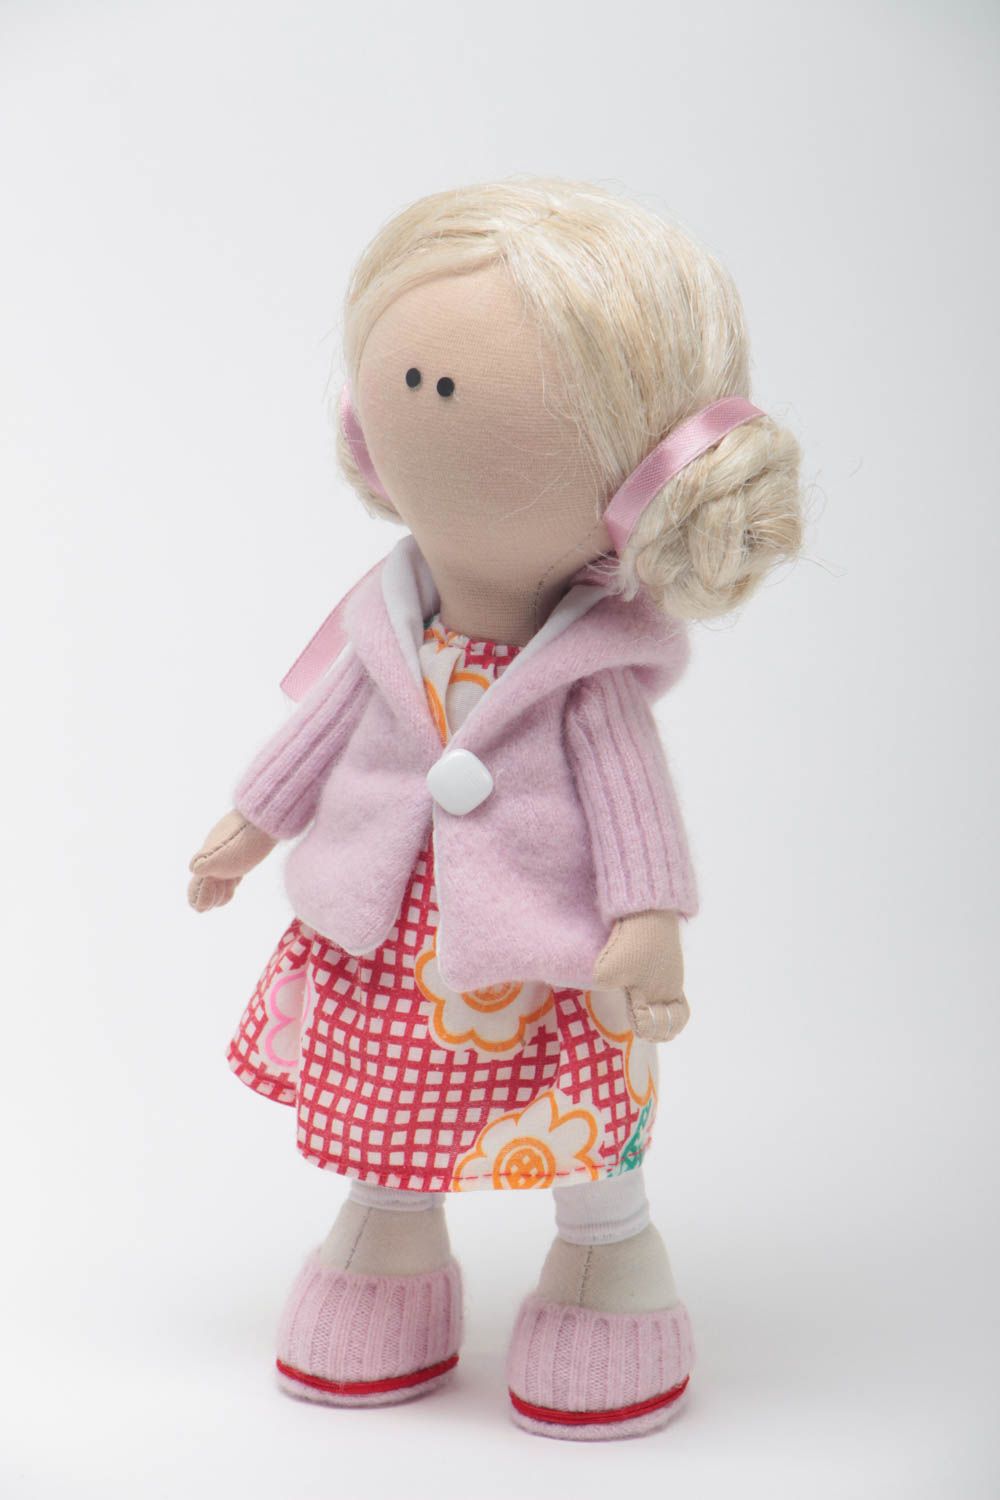 Декоративная текстильная кукла ручной работы авторская из натуральных тканей фото 2